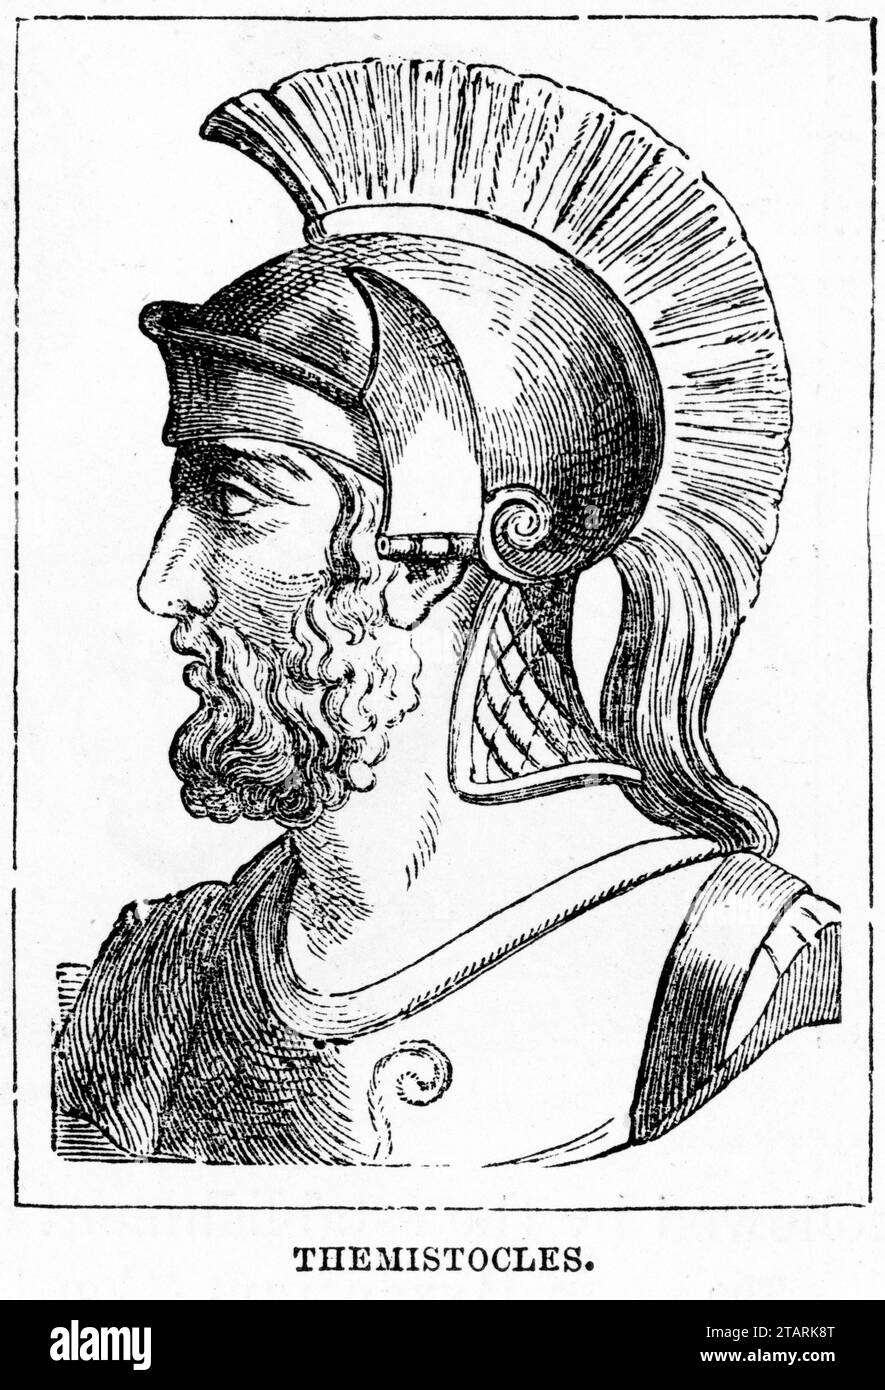 Portrait de Thémistocle (c. 524 – c. 459 av. J.-C.), homme politique et général athénien. Il faisait partie d'une nouvelle race de politiciens non aristocratiques qui ont pris de l'importance dans les premières années de la démocratie athénienne. Banque D'Images